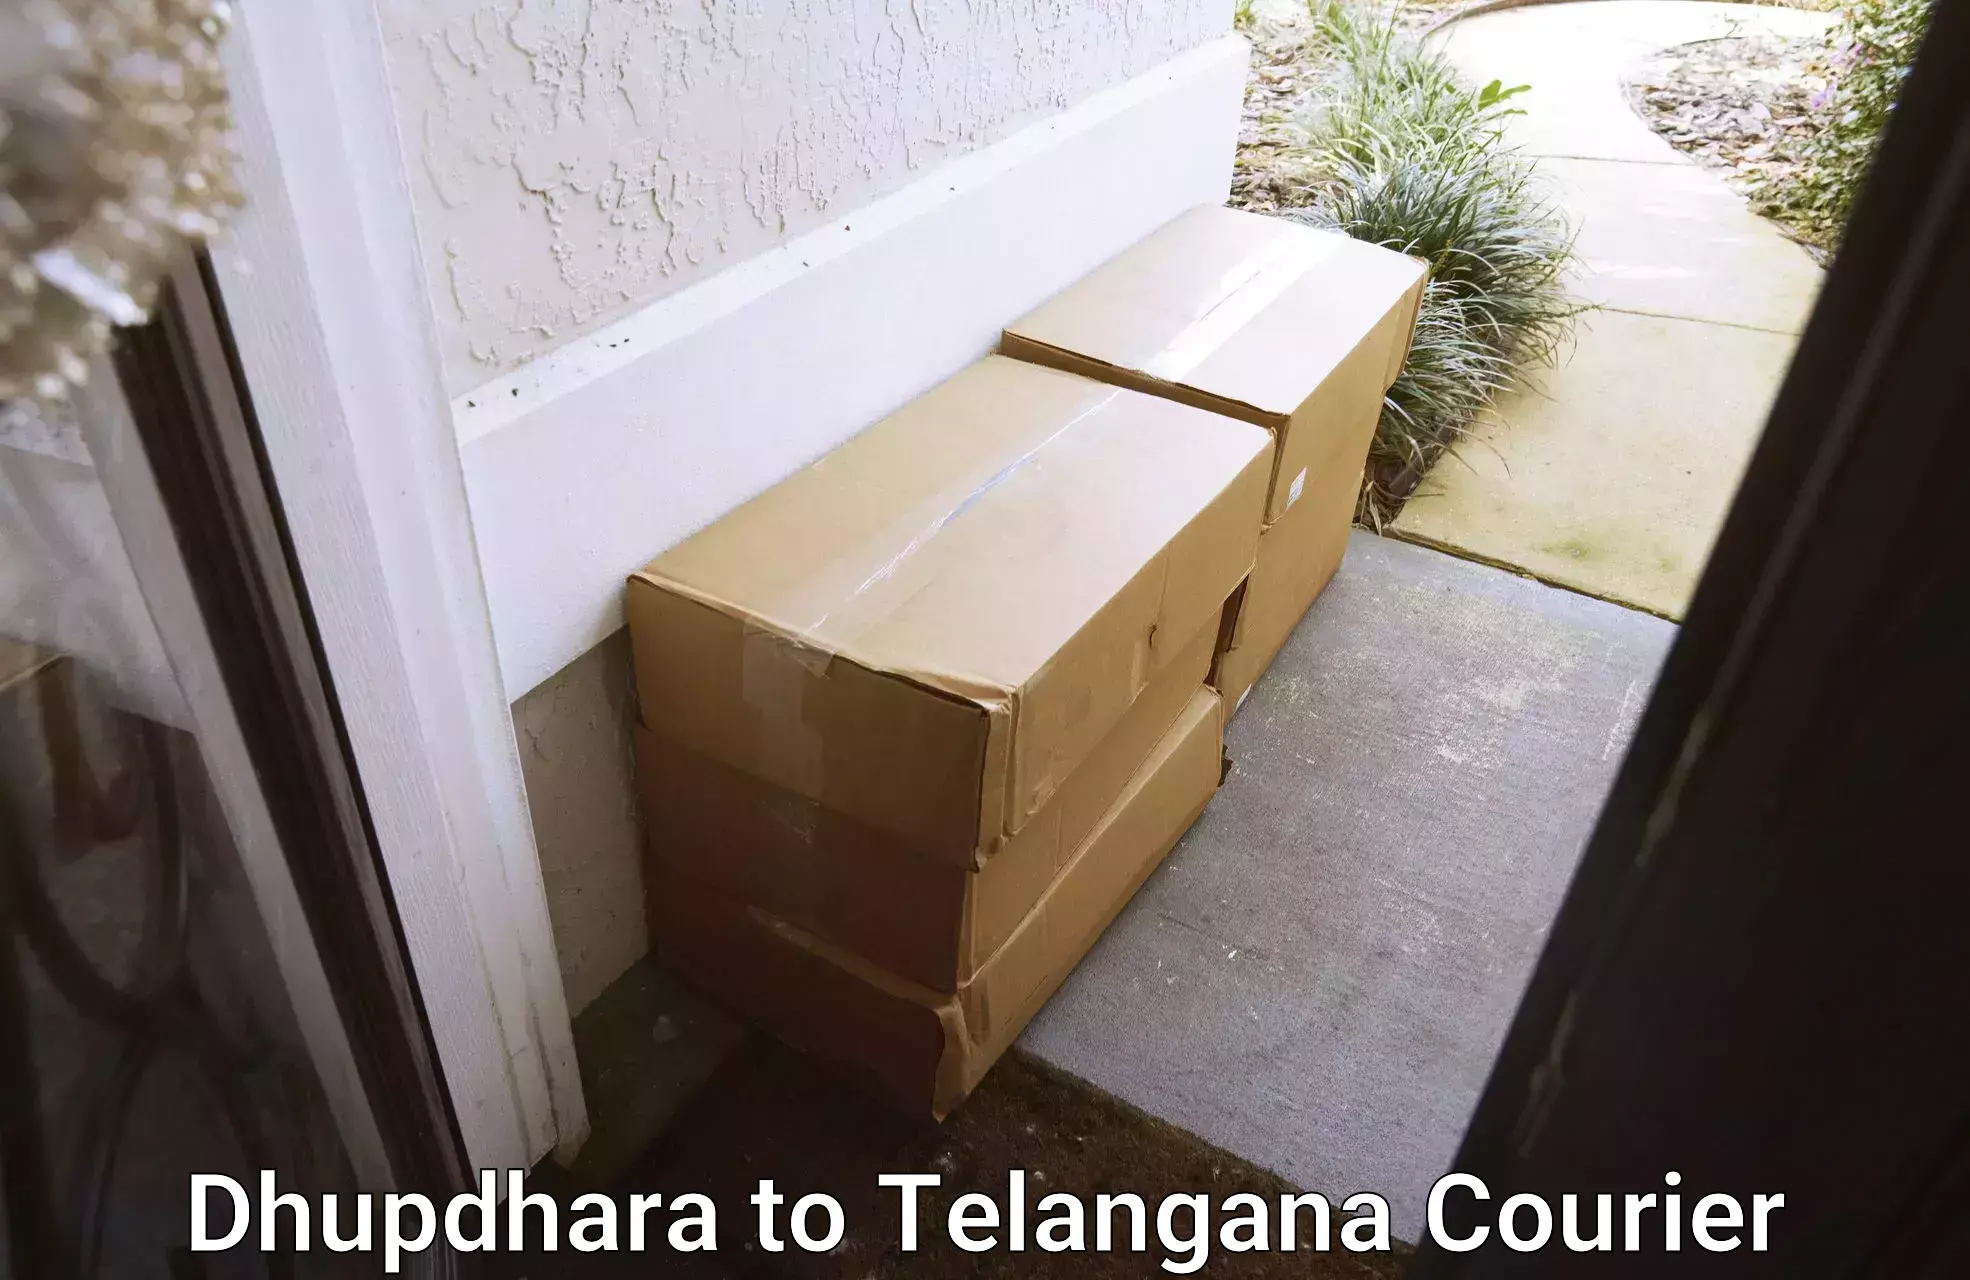 Expedited shipping solutions Dhupdhara to Telangana